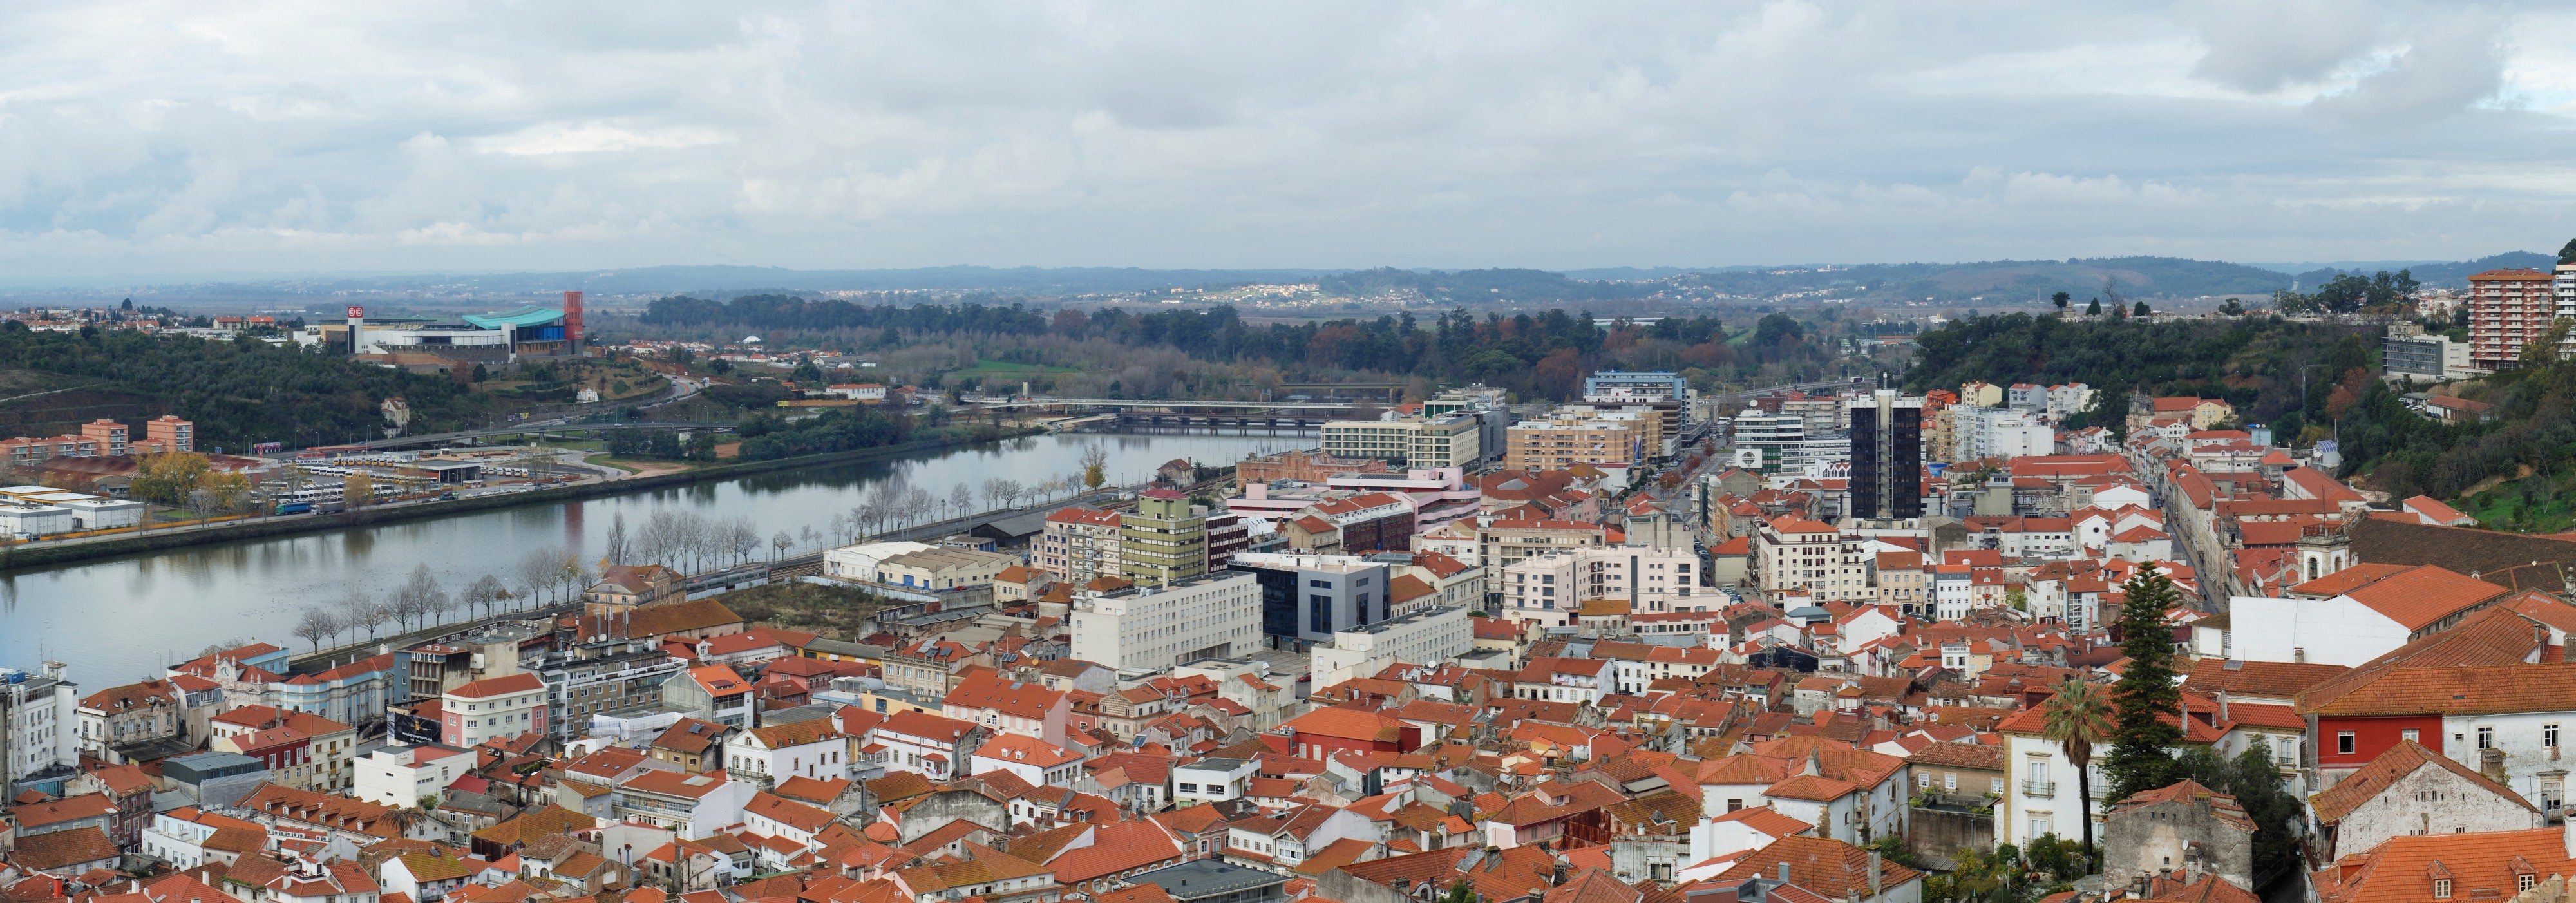 Coimbra December 2011-3